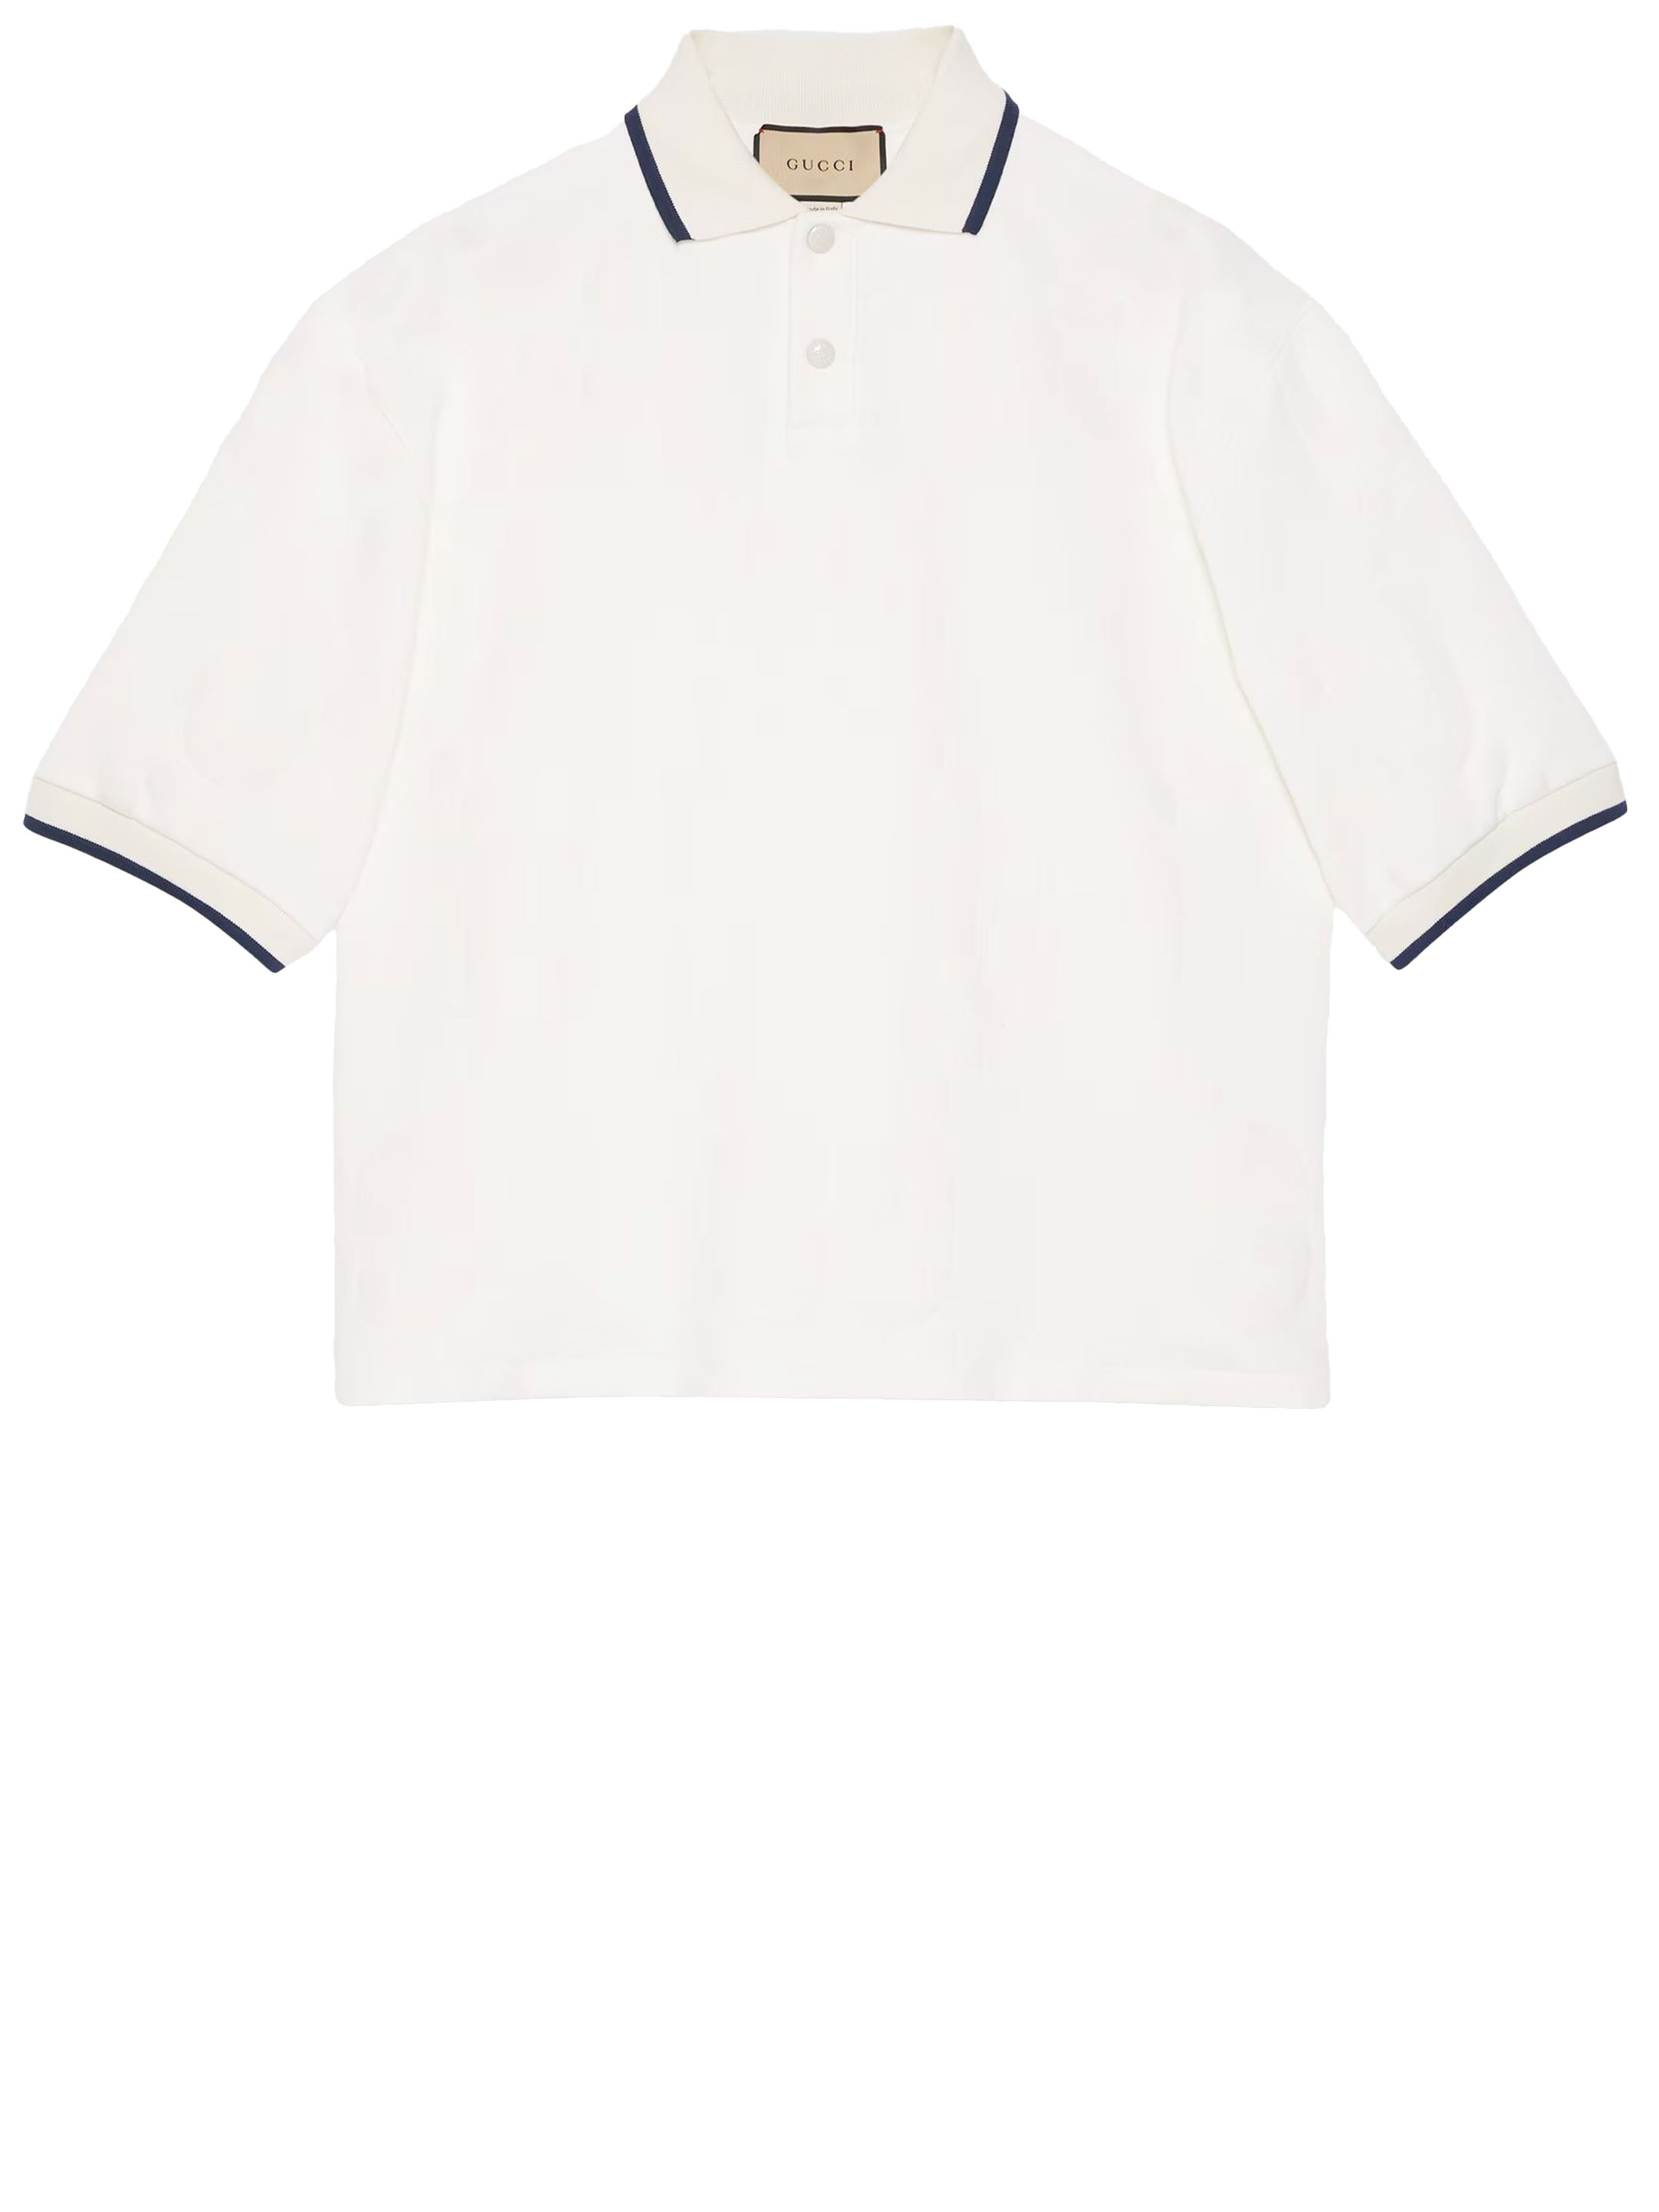 Рубашка Gucci GG cotton polo, белый